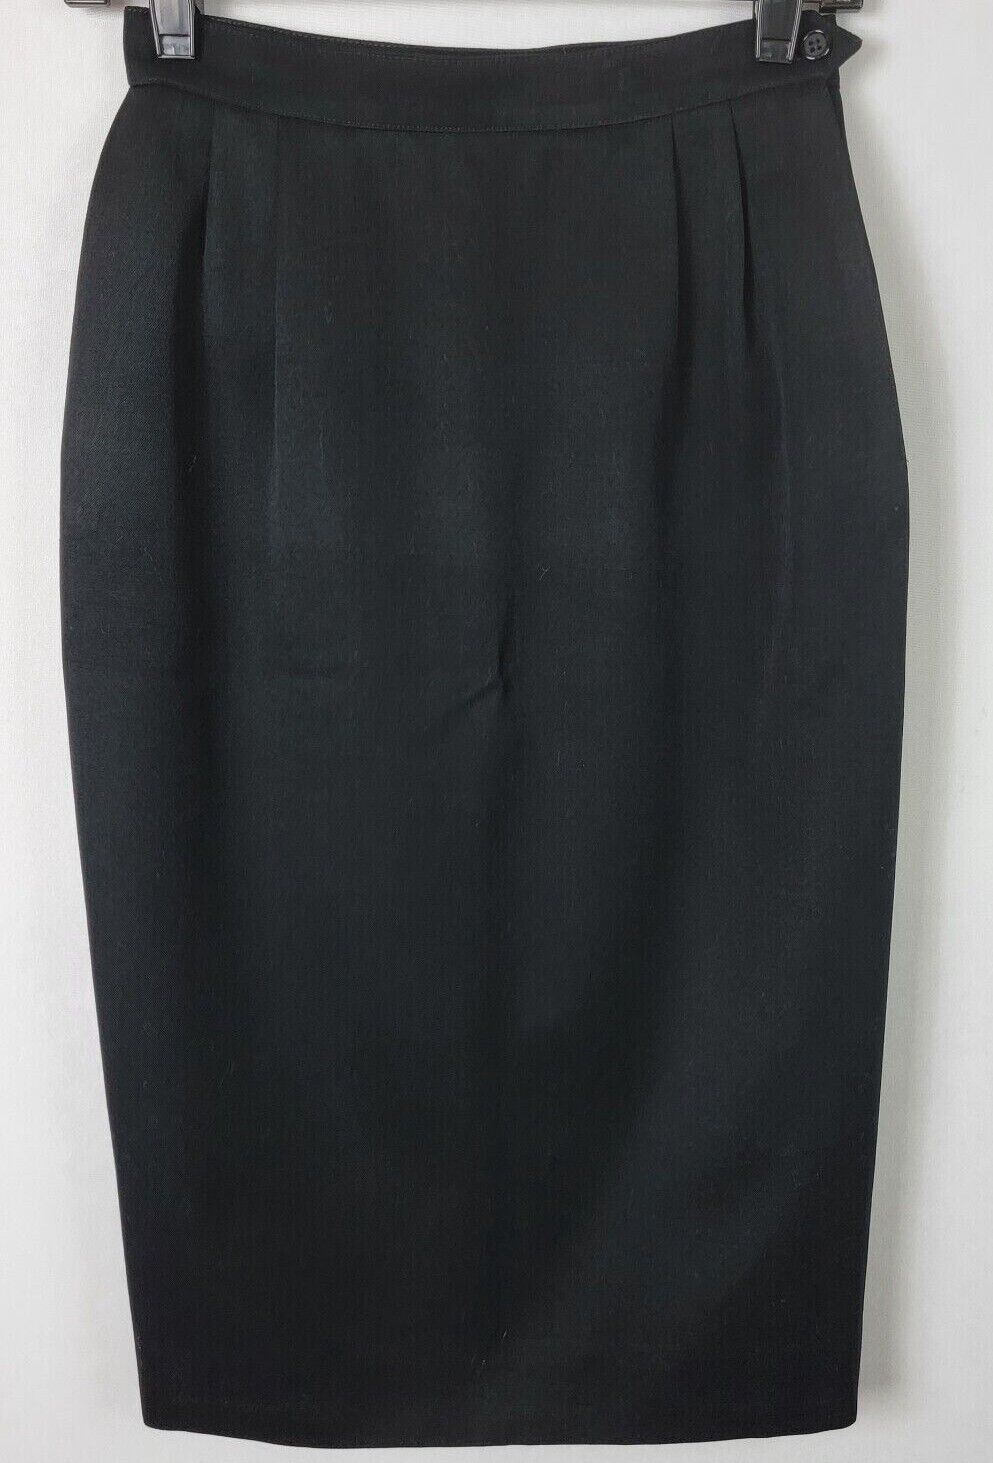 Austin Reed Black Pencil Skirt Women's 2 Knee Len… - image 1